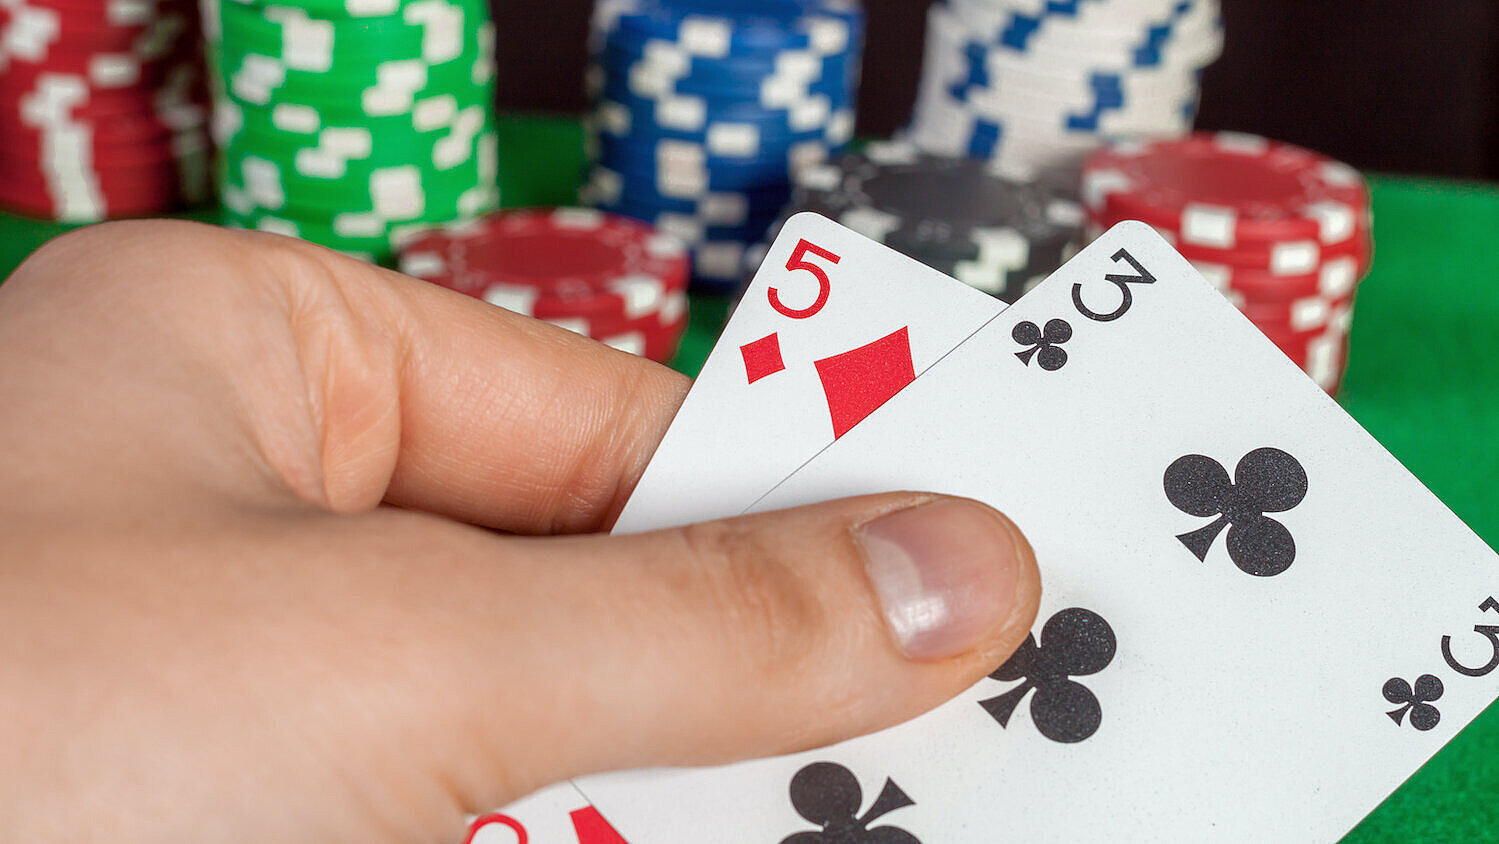 Eine Person hält die Spielkarten Karo 5 und Kreuz 3 in der Hand, im Hintergrund liegen Pokerchips. 